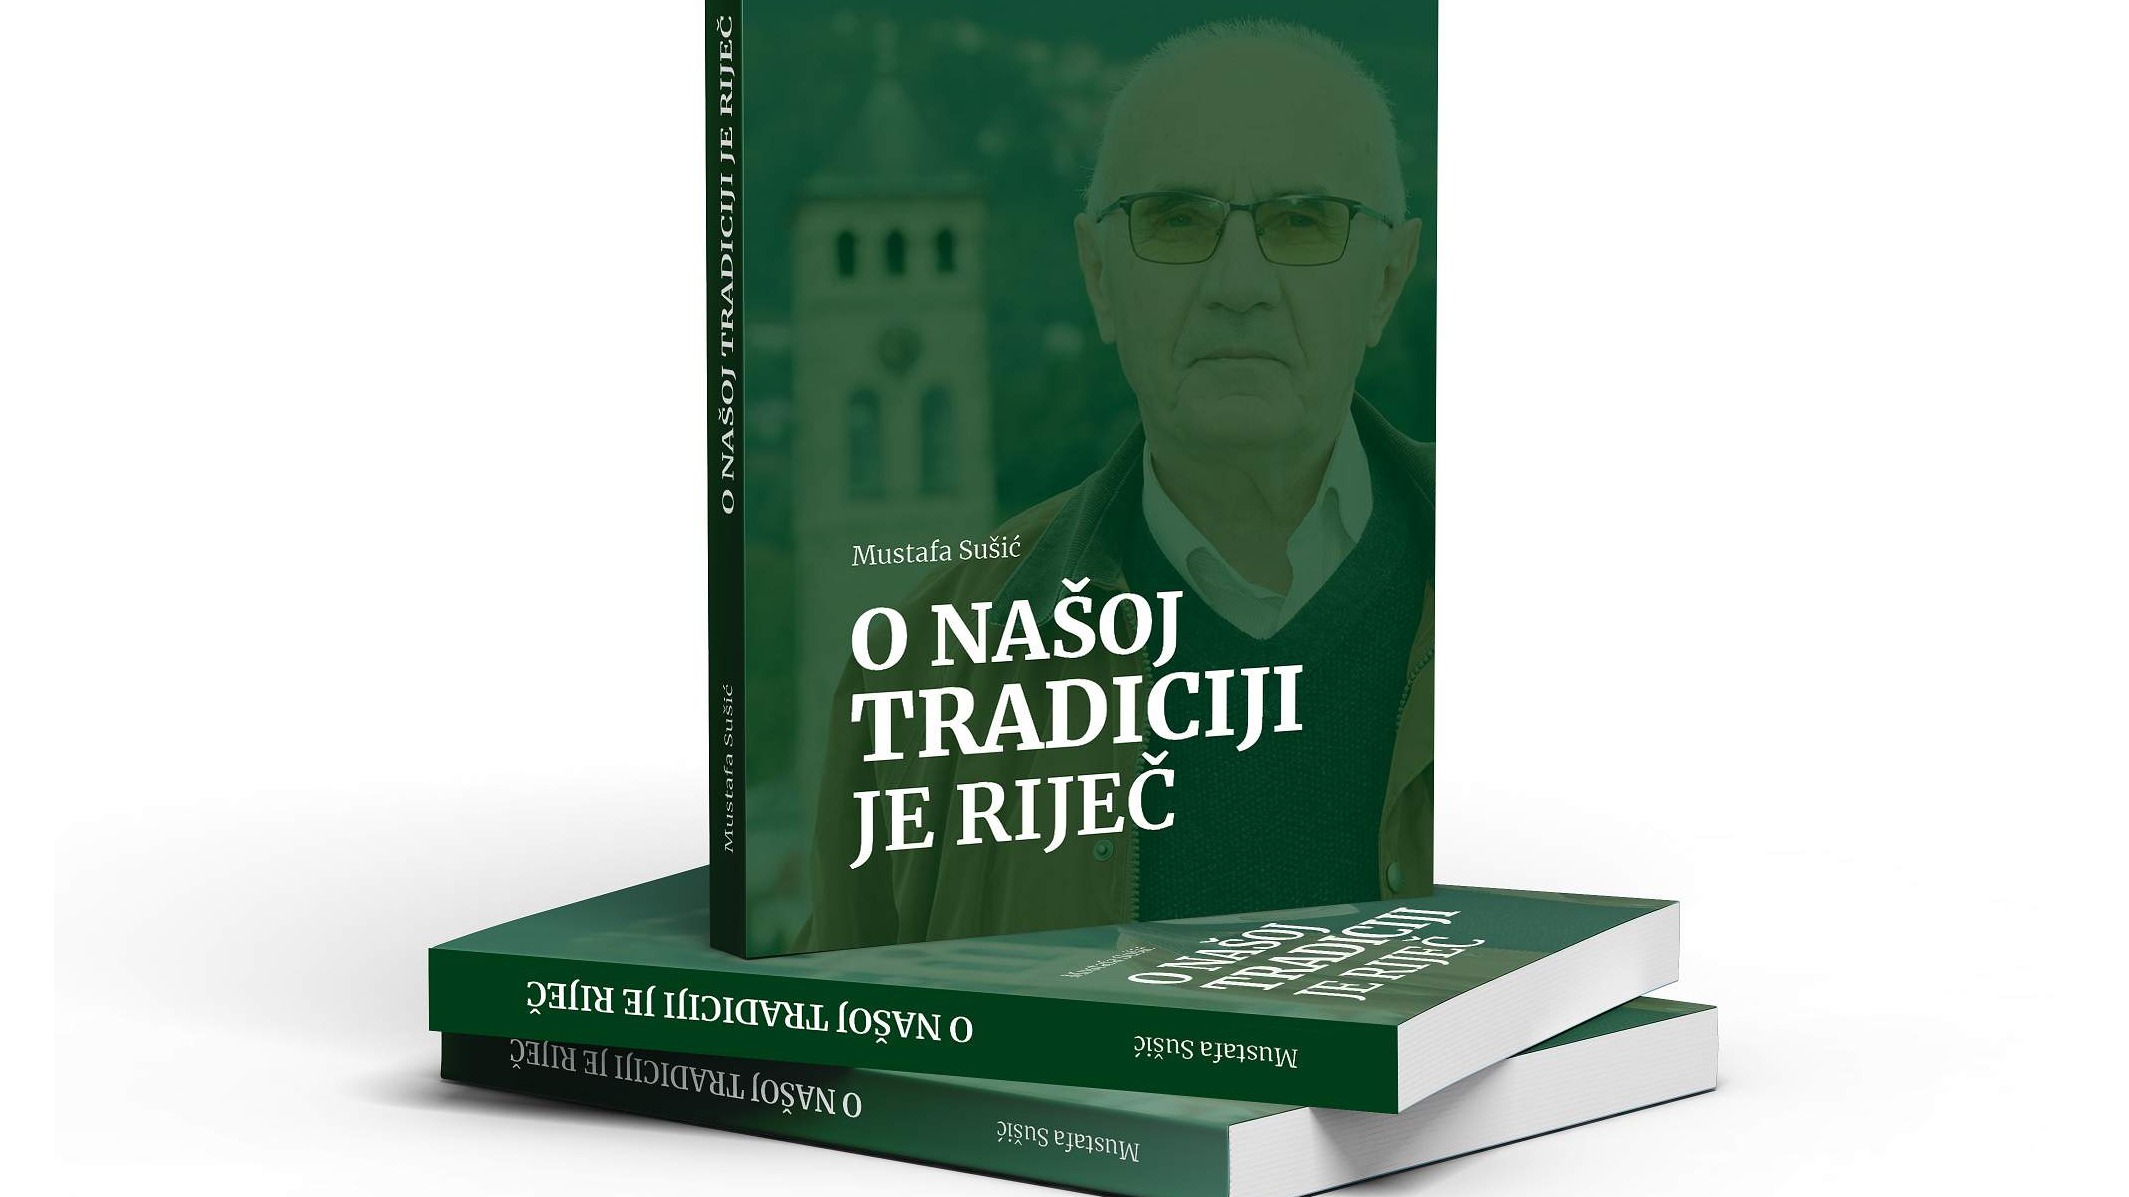 Danas promocija knjige profesora Mustafe Sušića "O našoj tradiciji je riječ"